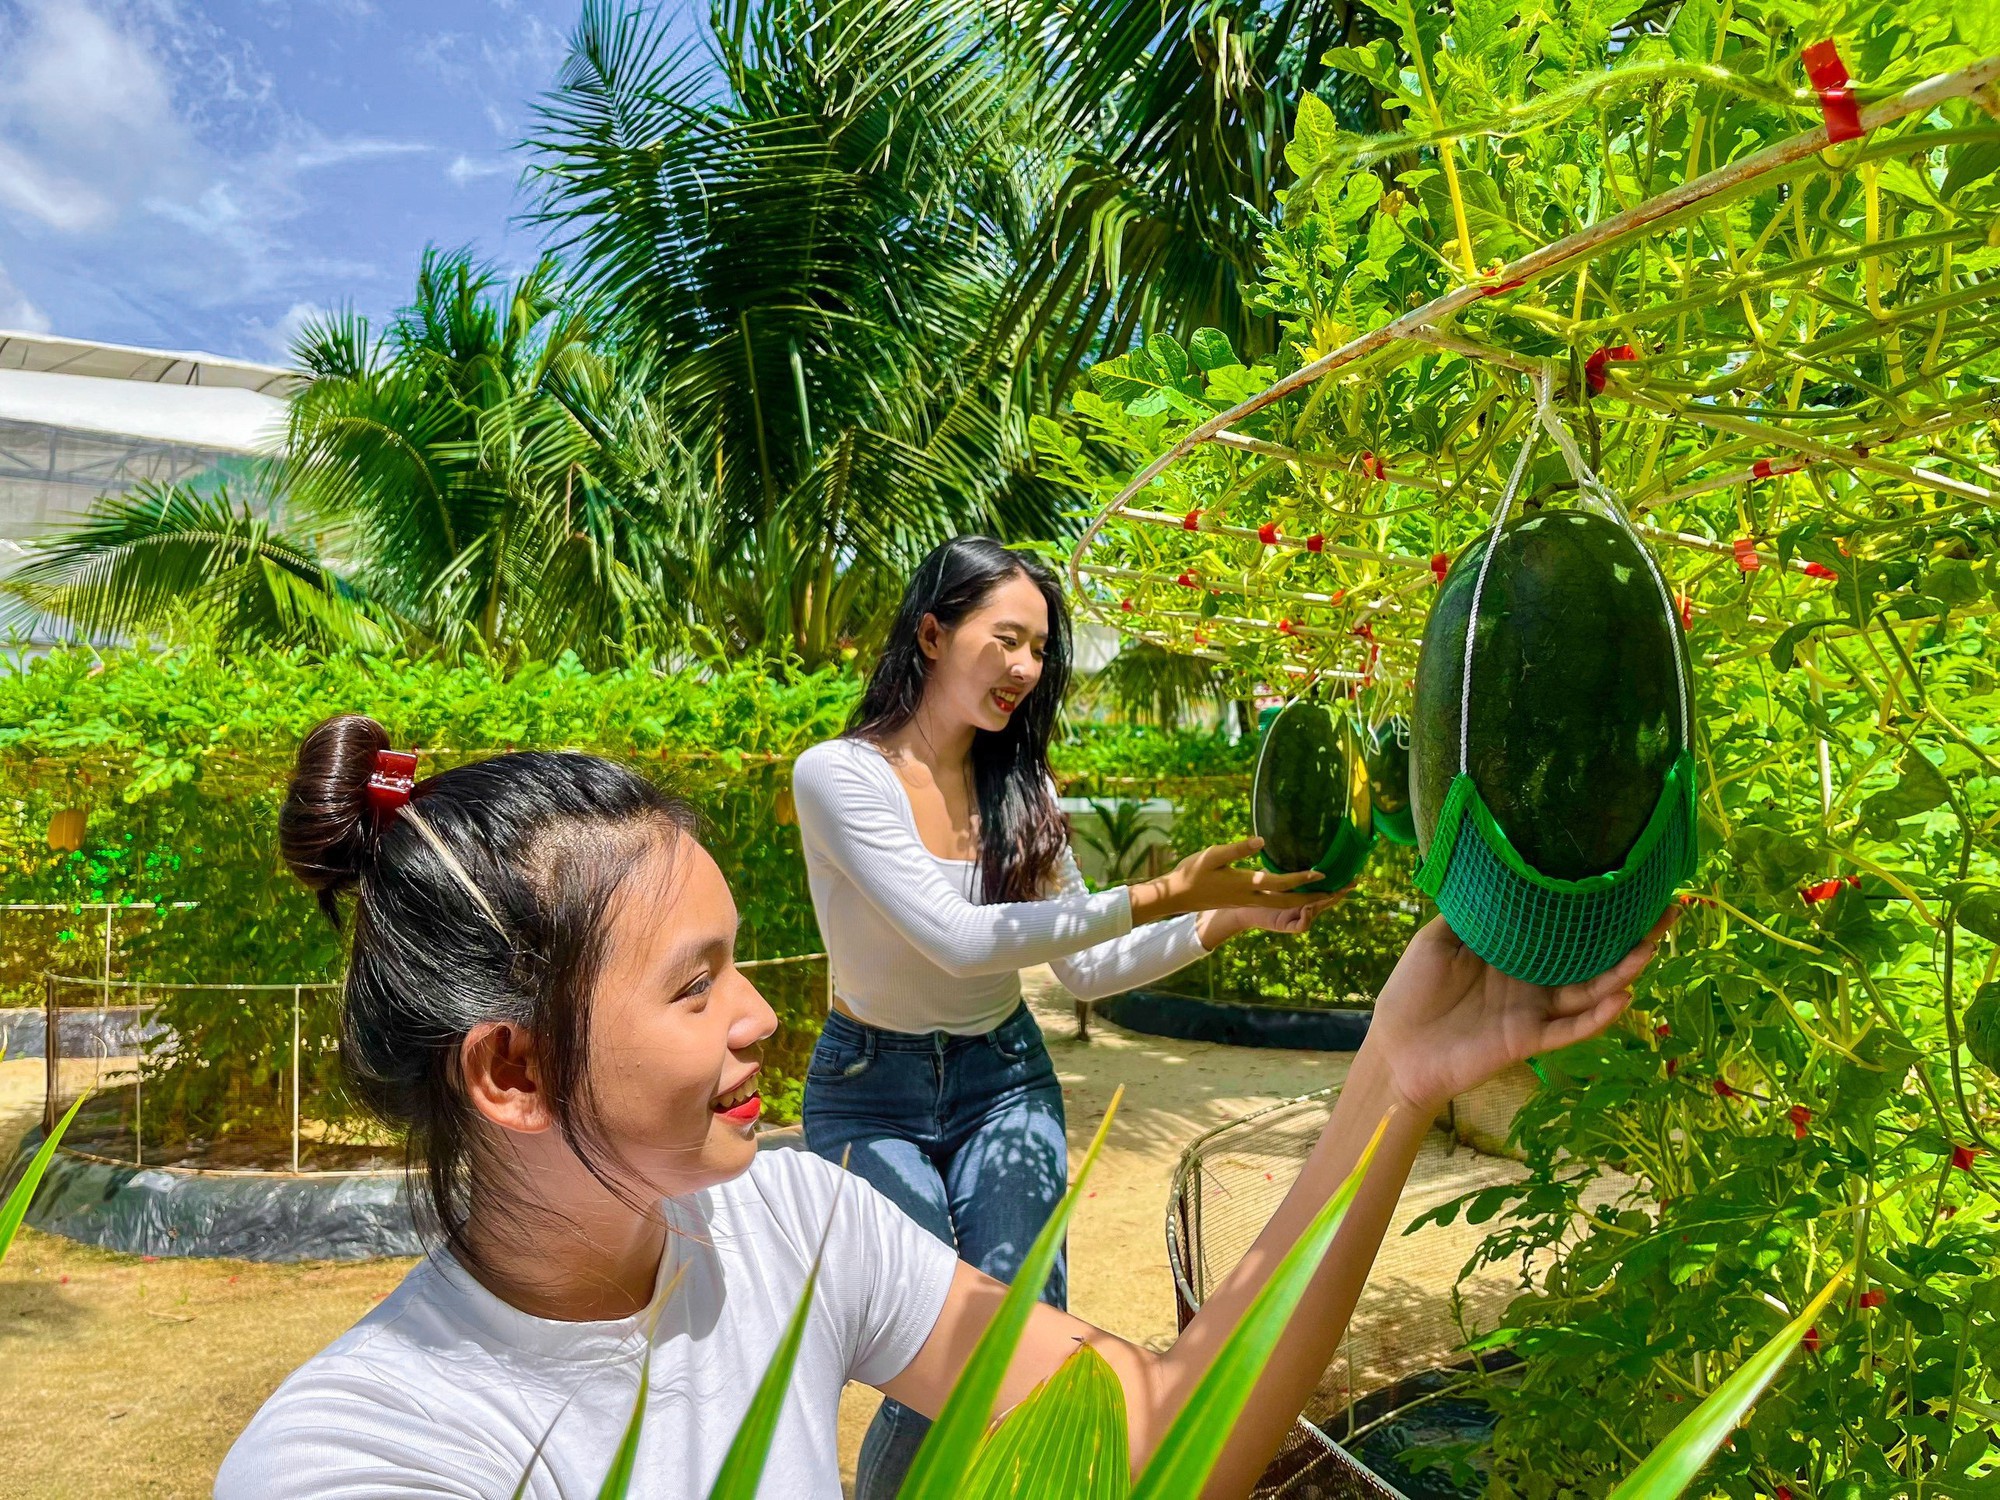 Đã mắt vườn nho Pháp khủng giữa Sài Gòn, có cả dưa hấu leo cây, khách thích thú tự tay hái, ăn tại chỗ - Ảnh 6.